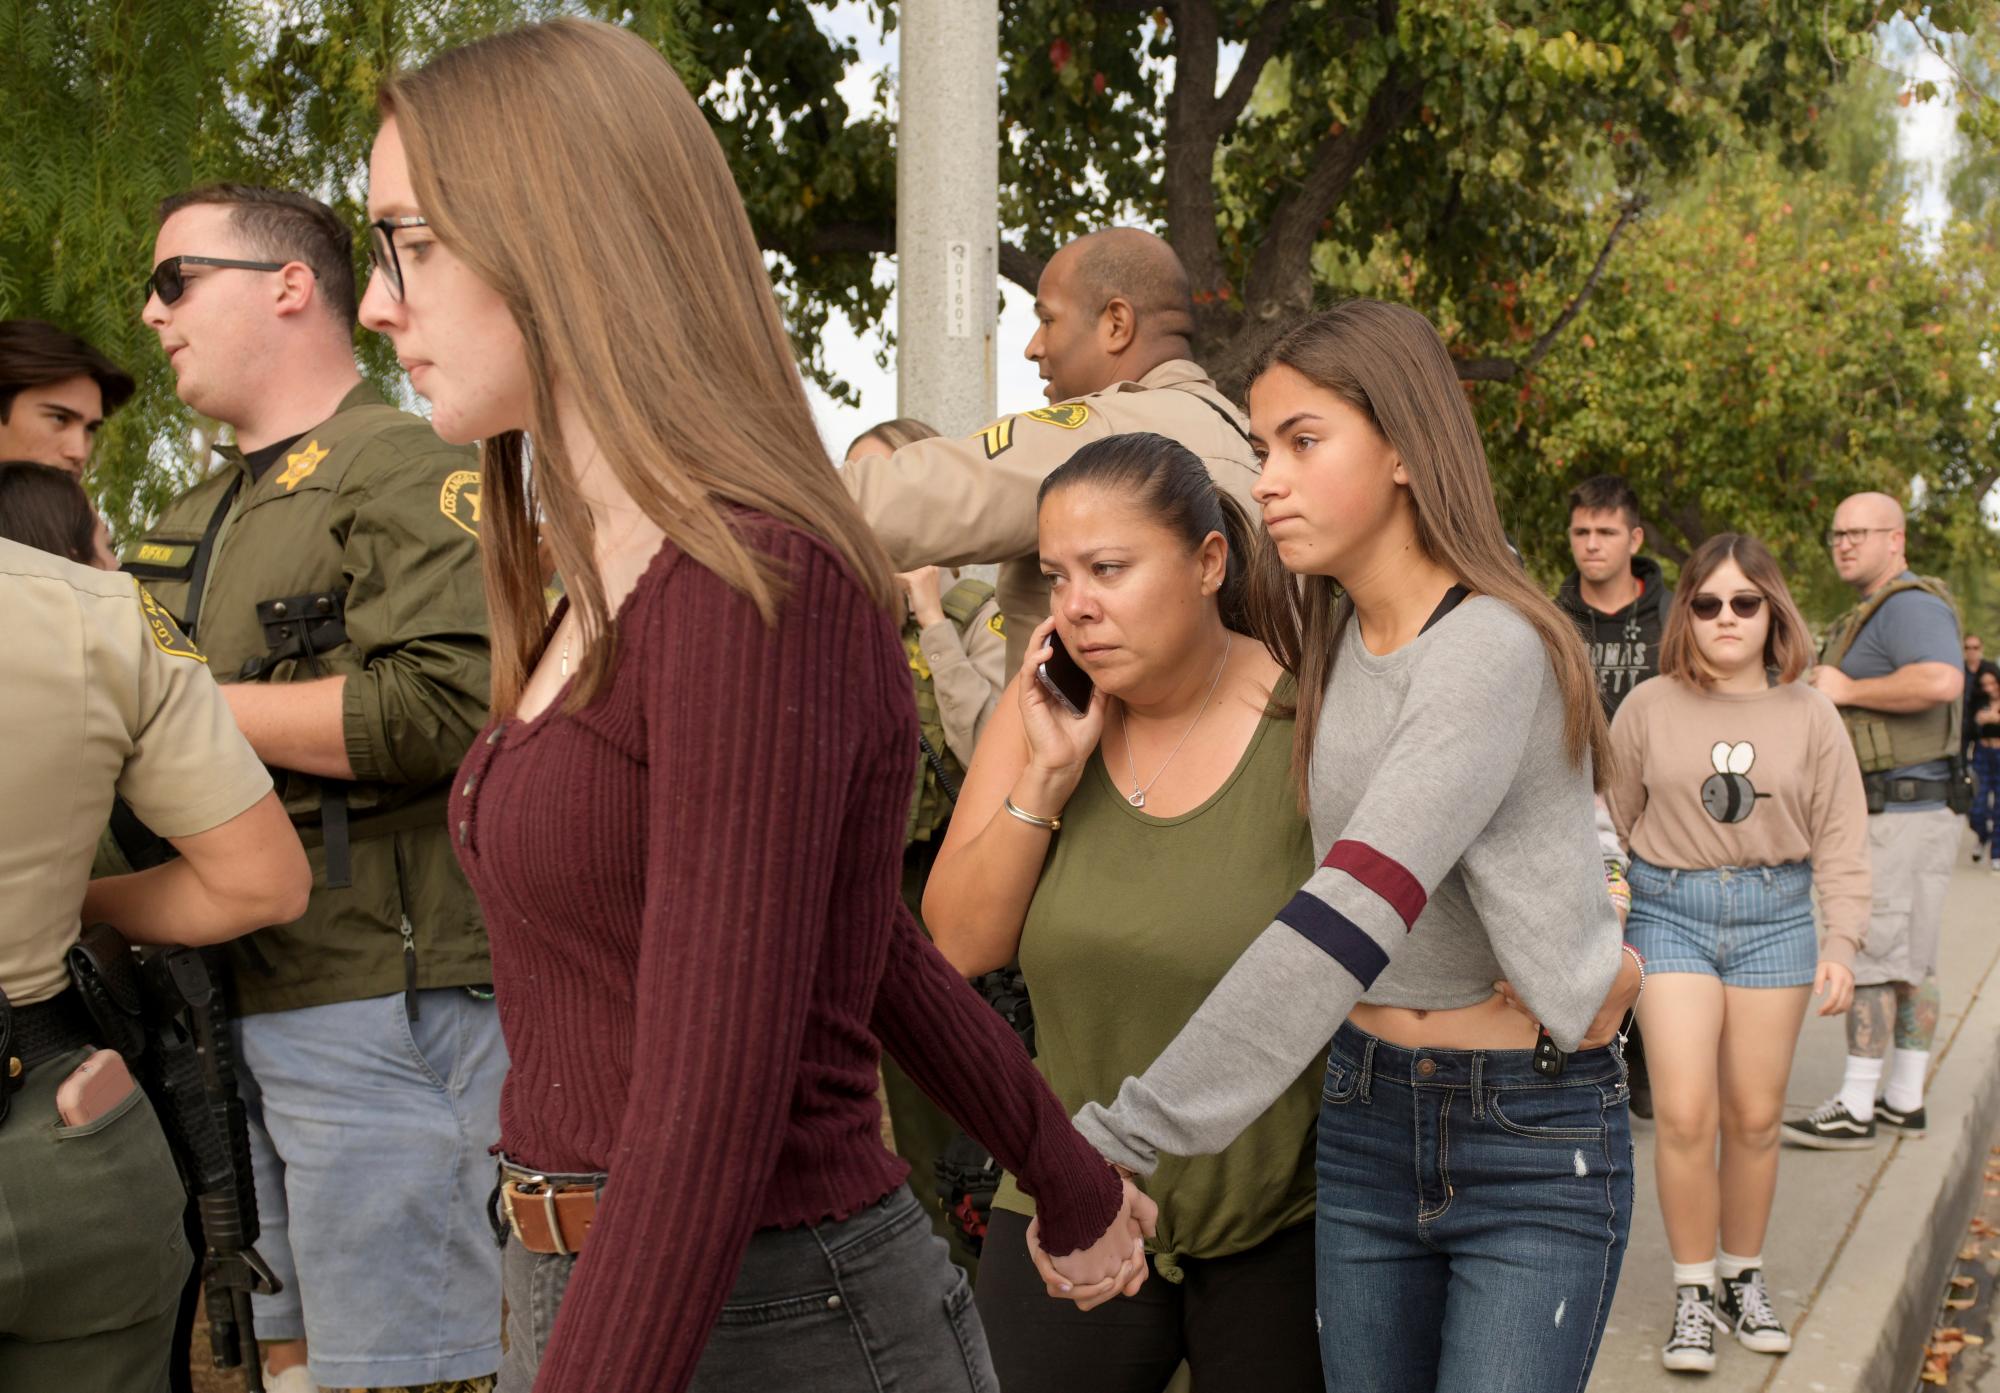 Los estudiantes evacuan su campus después de los informes de un tiroteo en la escuela secundaria Saugus el jueves 14 de noviembre de 2019 en Santa Clarita, California. El tiroteo ocurrió alrededor de las 7:30 a.m.en la escuela secundaria, a unas 30 millas (48 kilómetros) al noroeste del centro de la ciudad Los Angeles. 